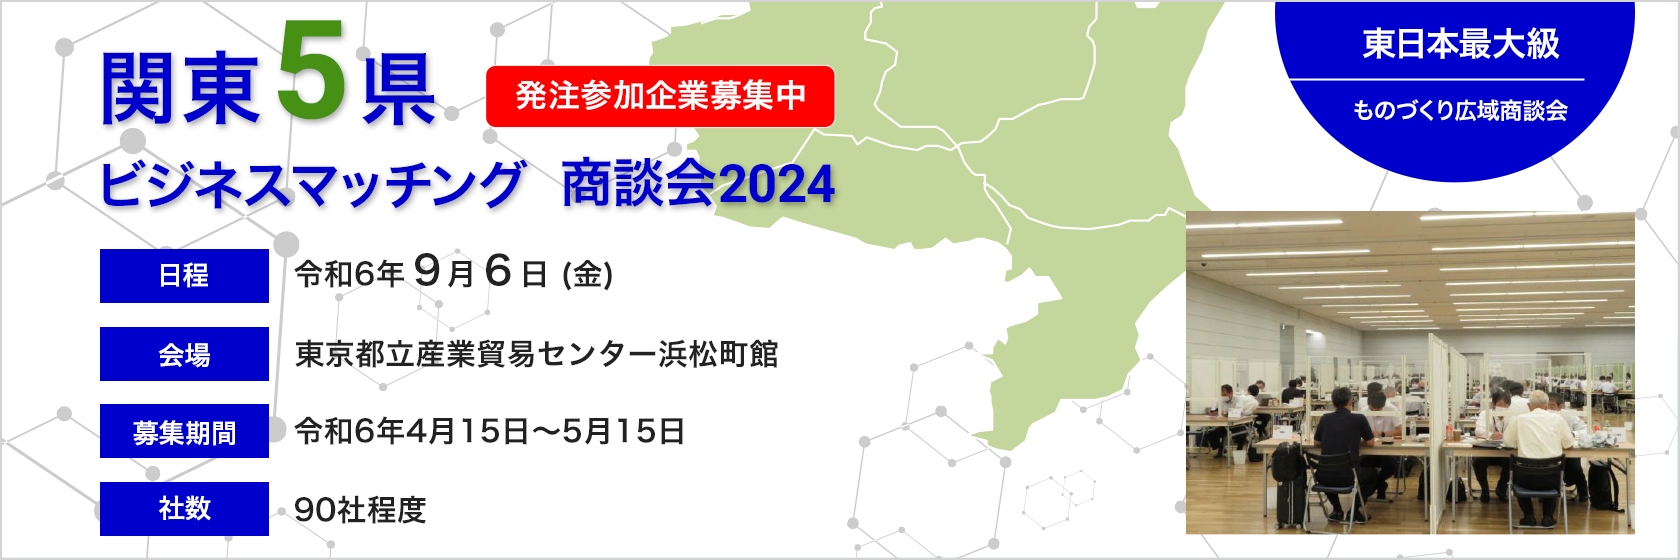 関東5県ビジネスマッチング商談会2024